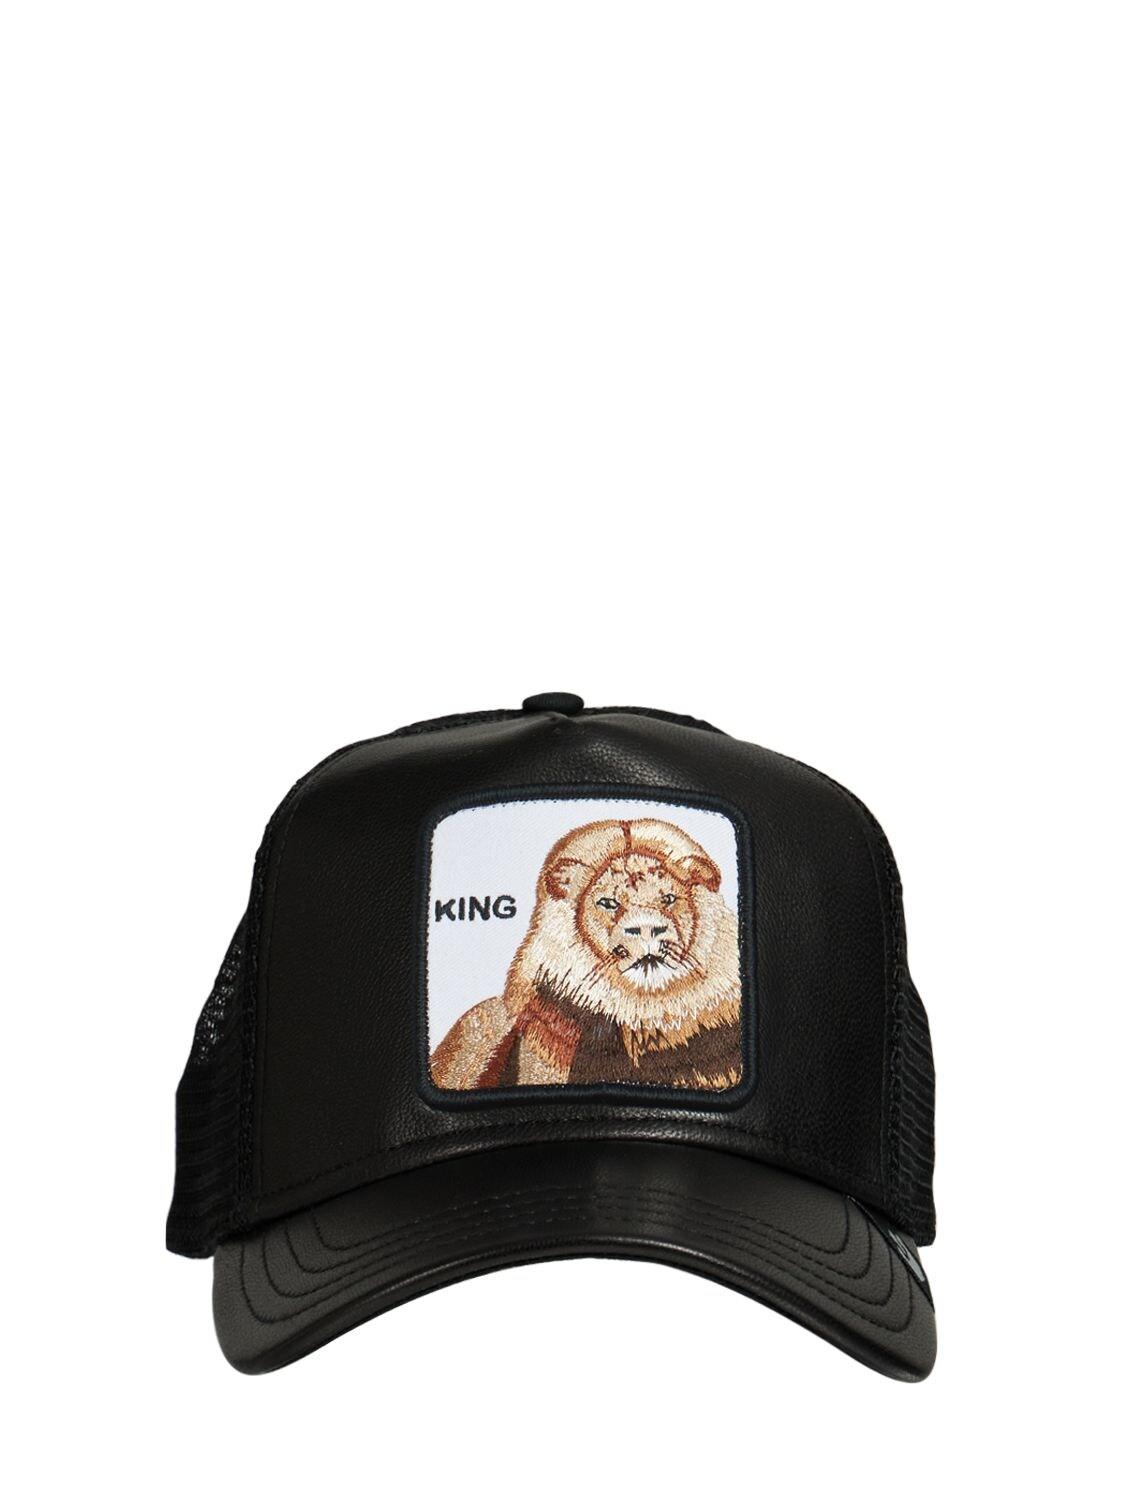 Gorilla Wear Mesh cap Black